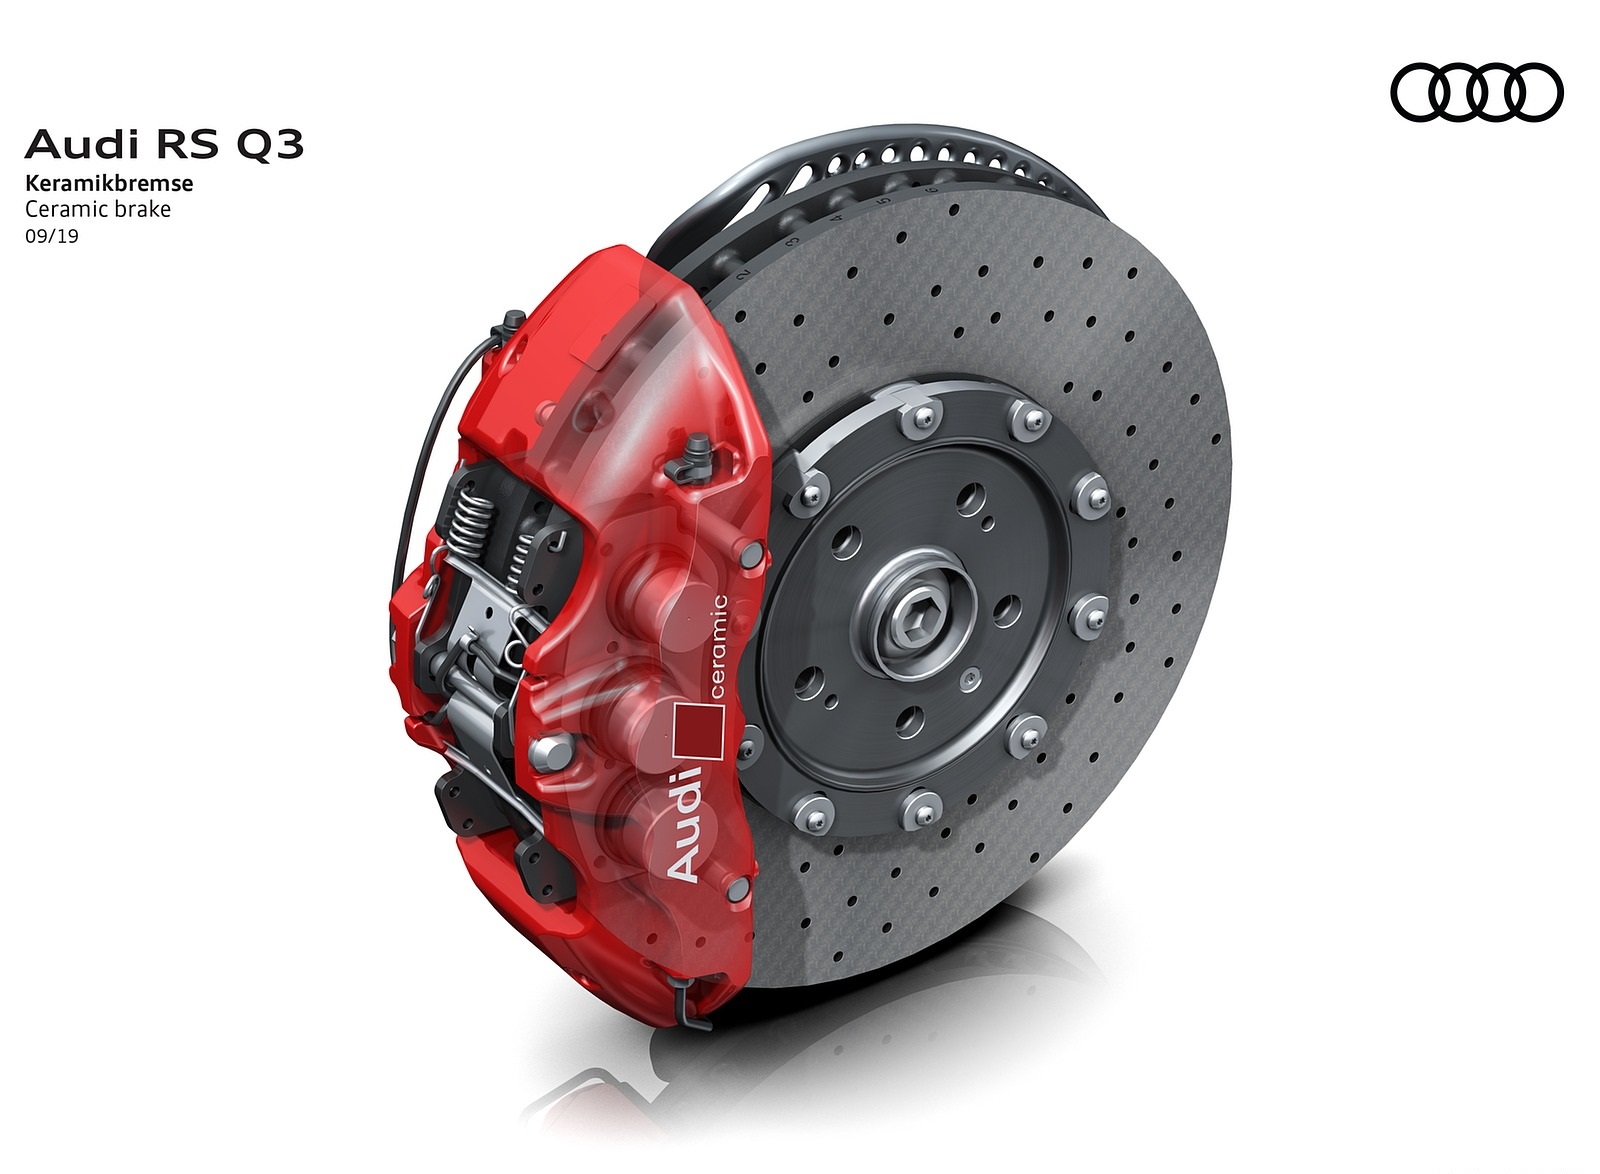 2020 Audi RS Q3 Ceramic brake Wallpapers #112 of 116